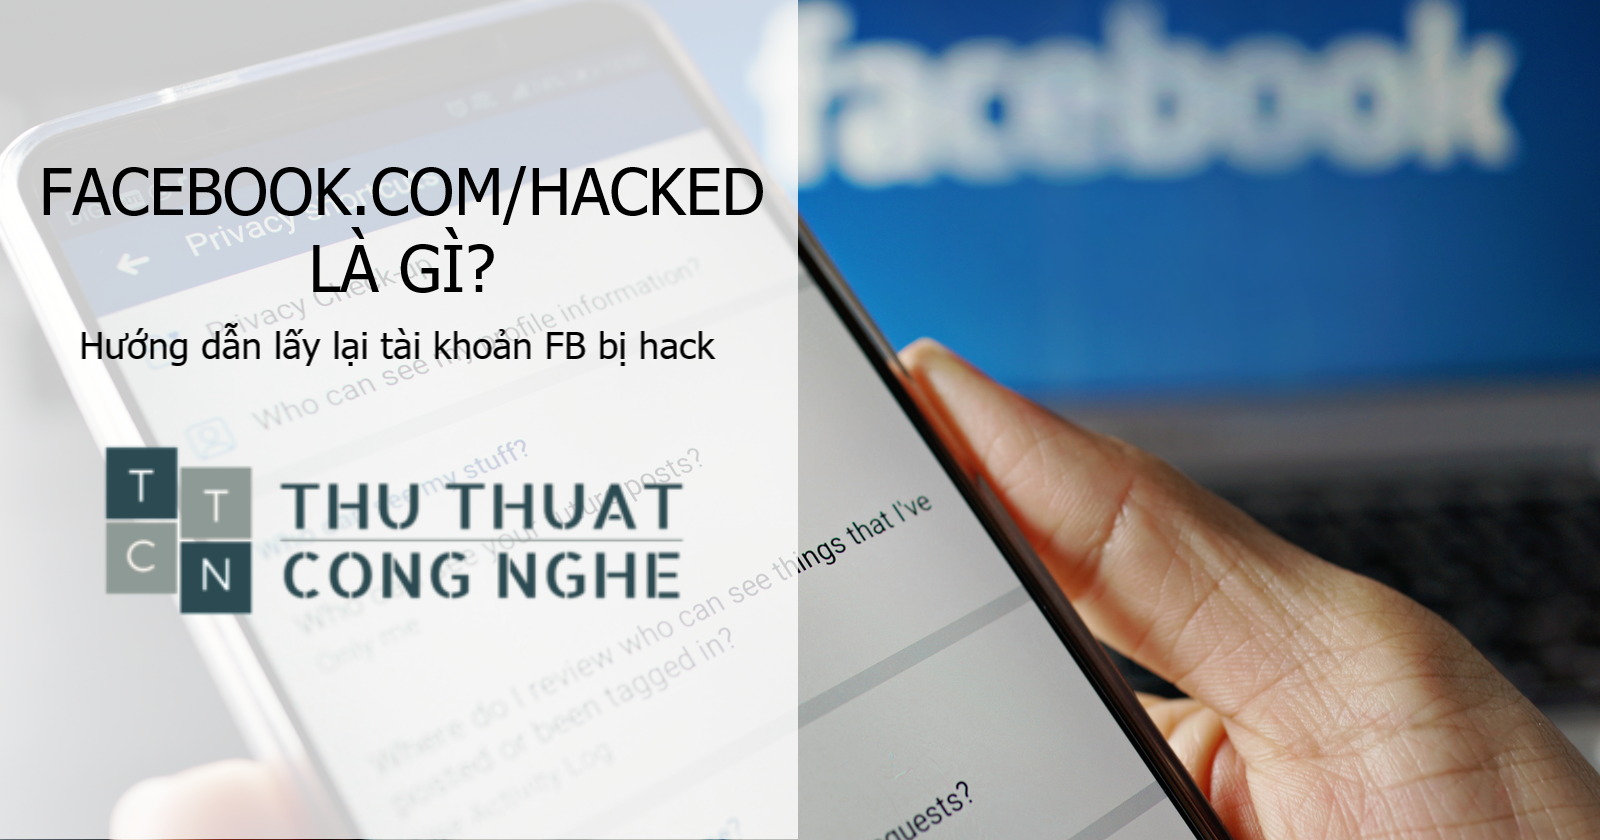 facebook.com/hacked là gì? Hướng dẫn lấy lại tài khoản FB bị hack